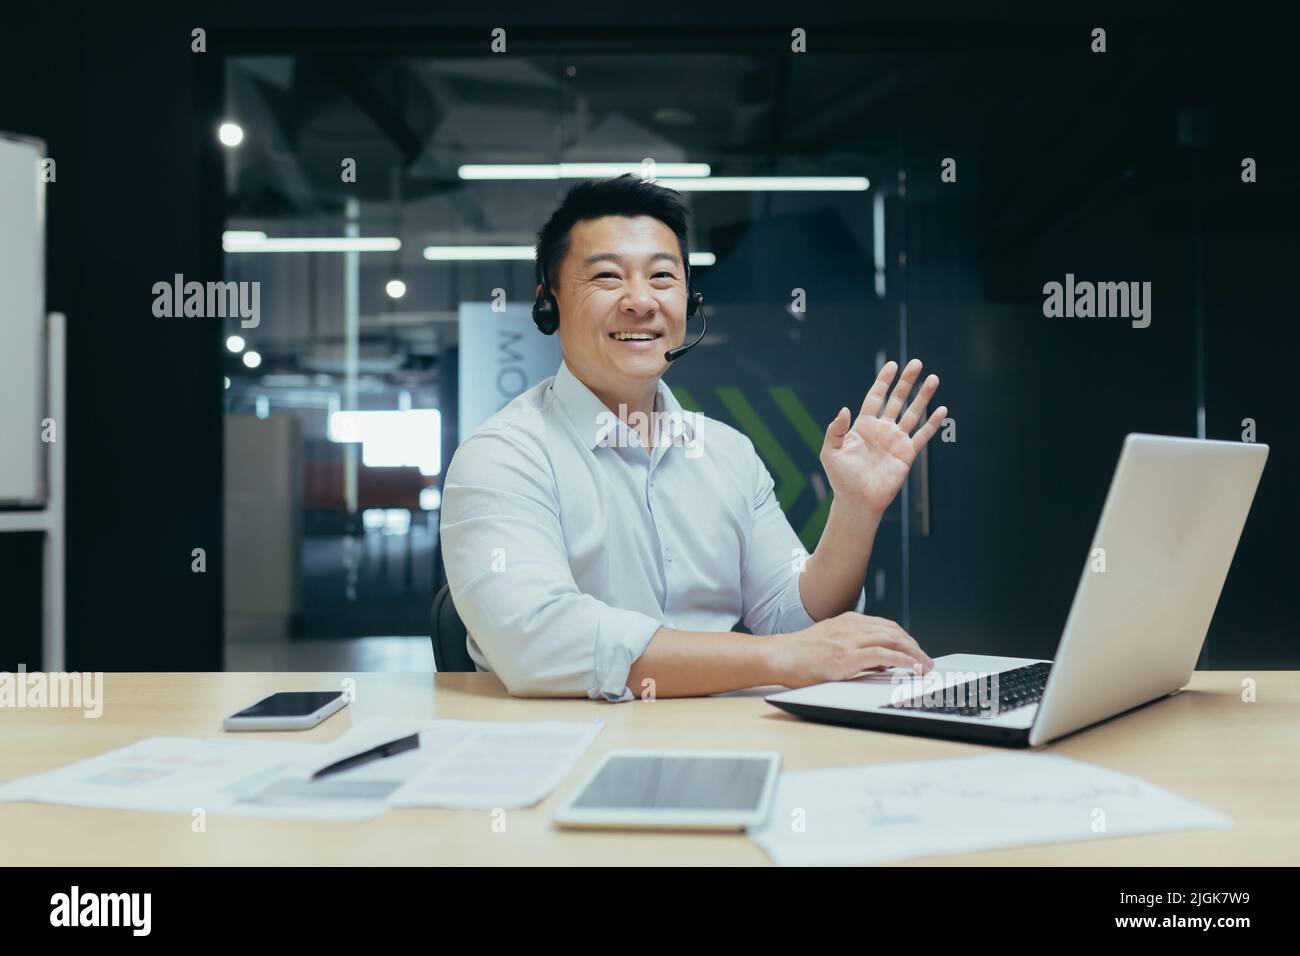 Porträt eines asiatischen Geschäftsmannes, der die Kamera anschaut und eine winkende Grußgeste zeigt, eines Mannes mit Headset für Videoanruf Stockfoto